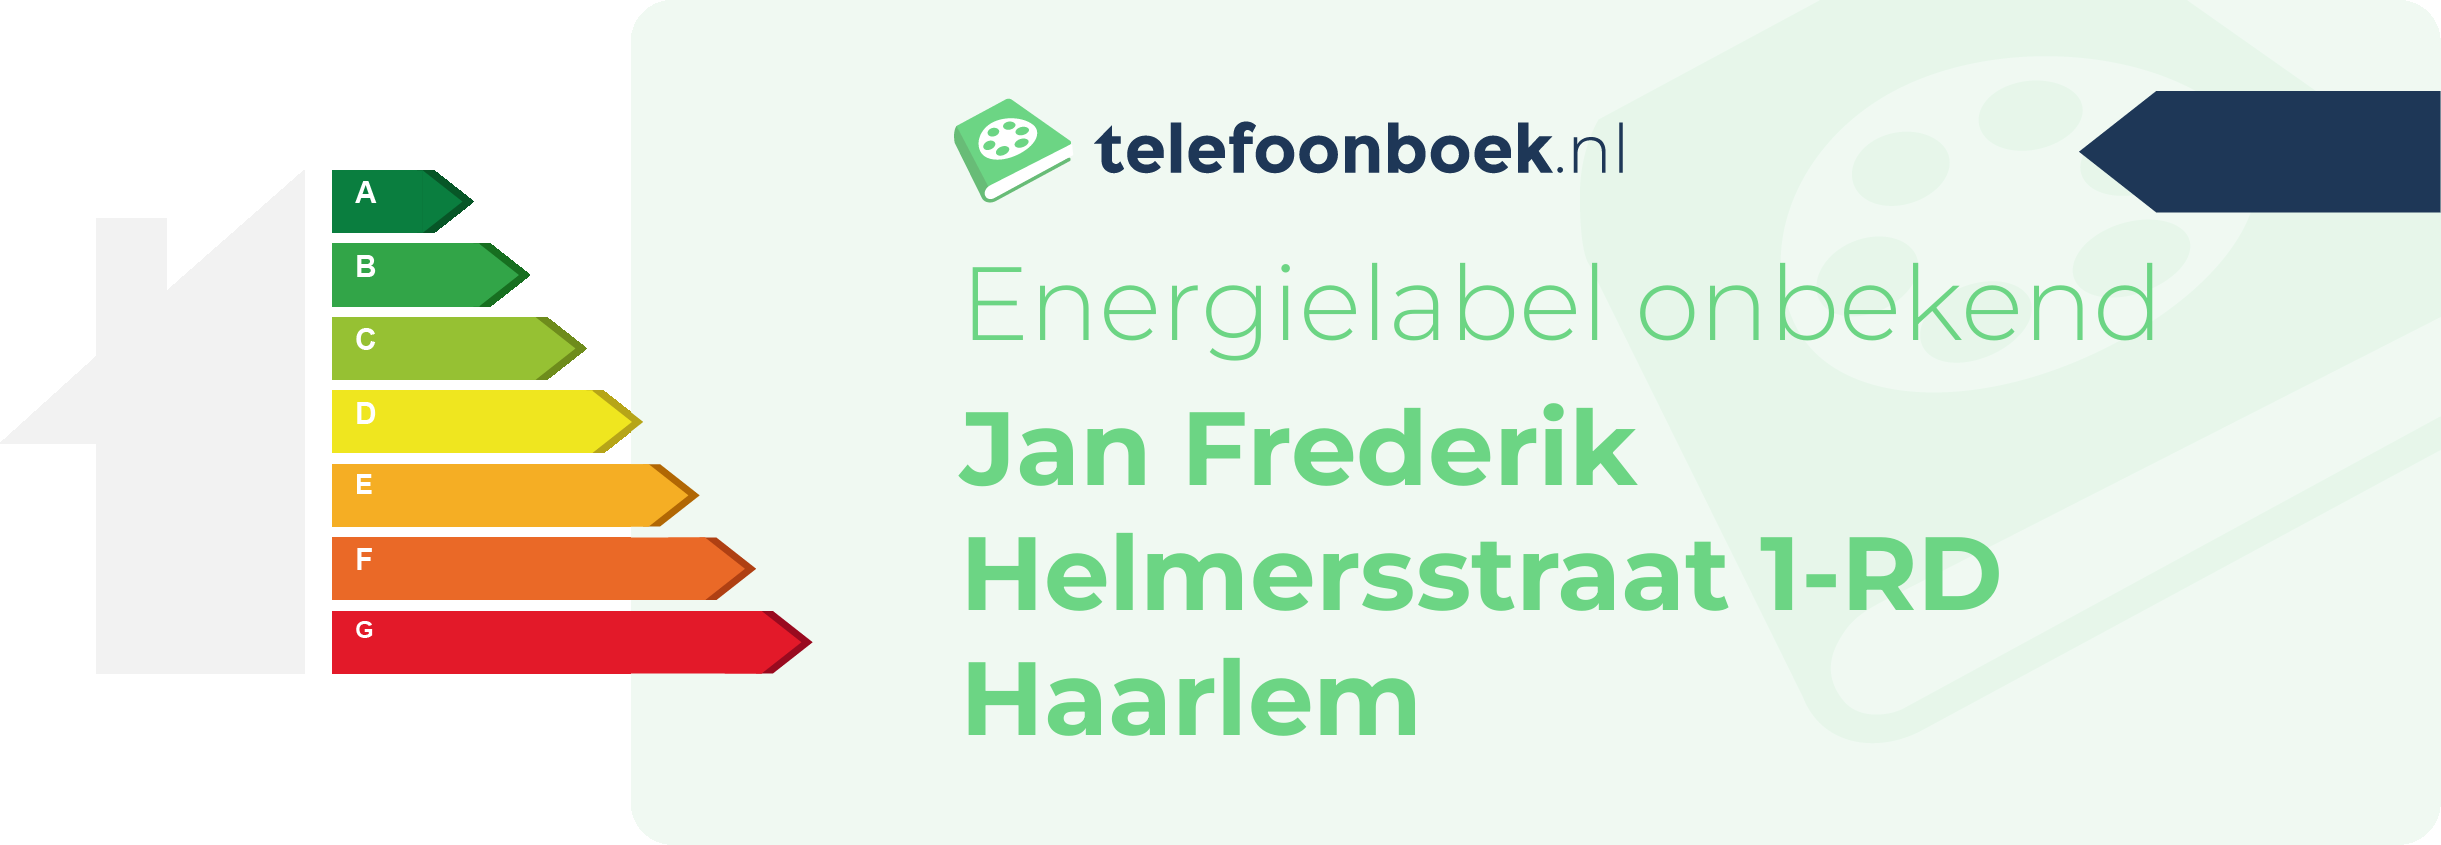 Energielabel Jan Frederik Helmersstraat 1-RD Haarlem